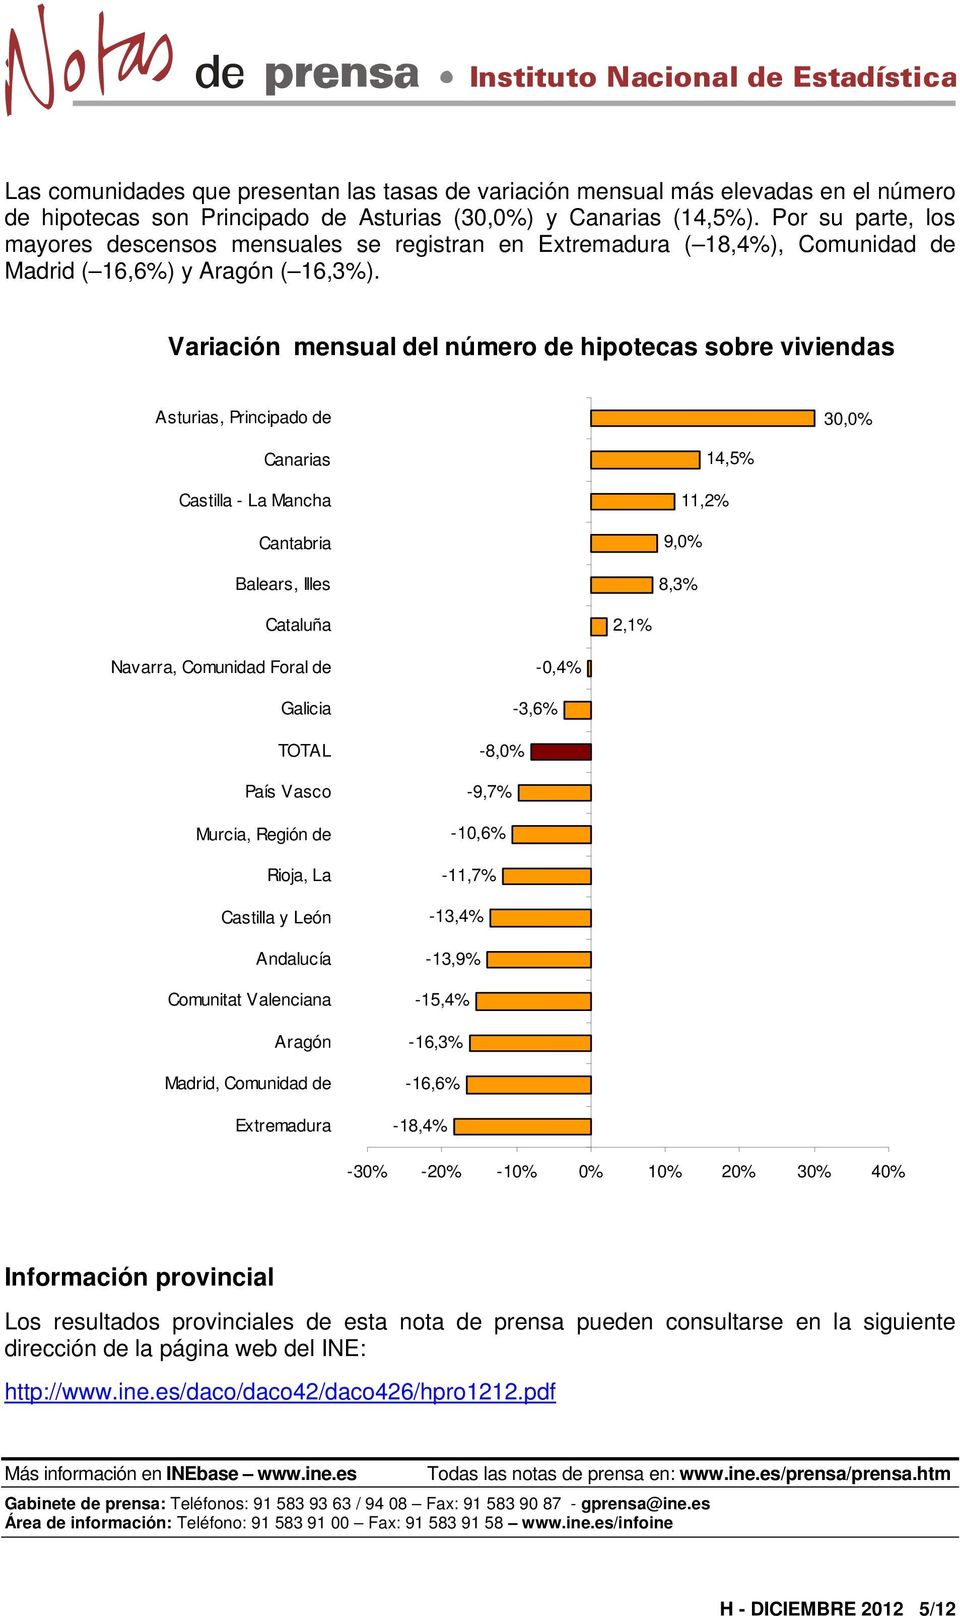 Variación mensual del número de hipotecas sobre viviendas Asturias, Principado de 30,0% Canarias Castilla - La Mancha Cantabria Balears, Illes 14,5% 11,2% 9,0% 8,3% Cataluña 2,1% Navarra, Comunidad